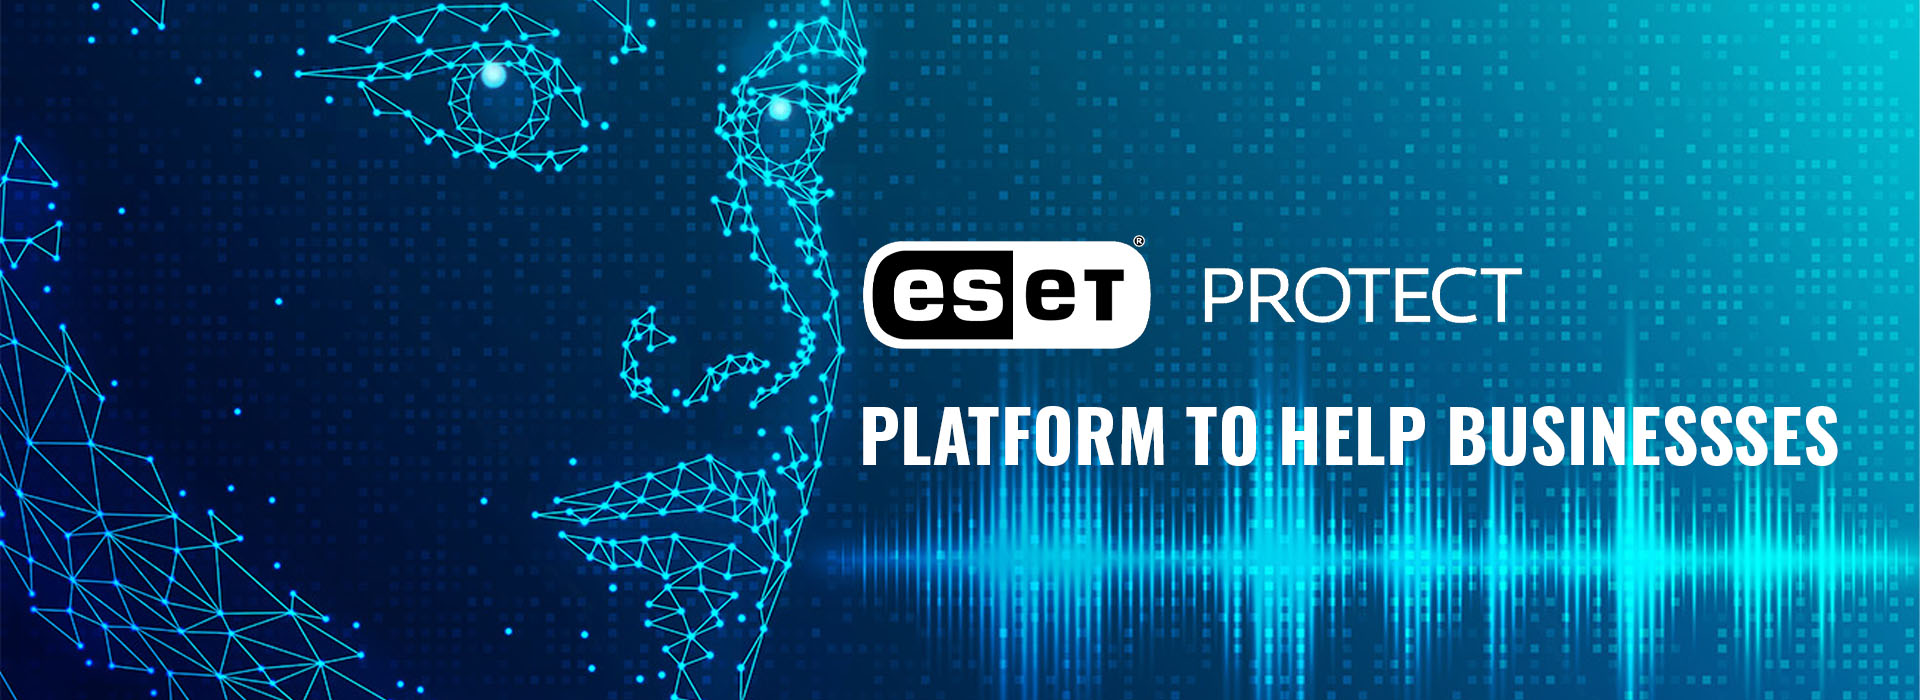 [CẬP NHẬT] ESET công bố các bản cập nhật quan trọng cho ESET PROTECT Platform để giúp doanh nghiệp vượt qua những kẻ tấn công